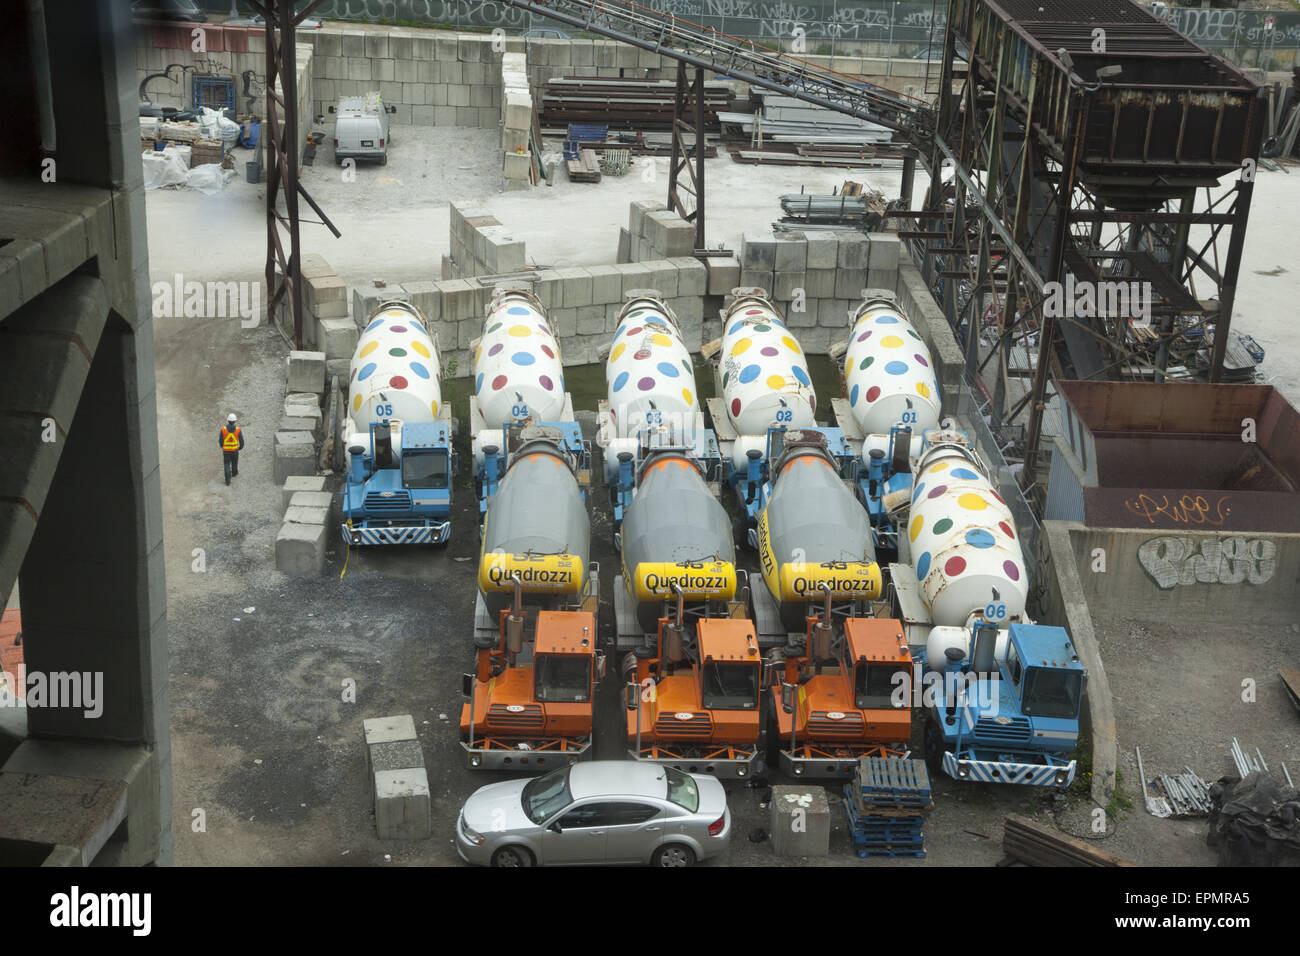 Les camions de ciment garés à l'usine de ciment dans la zone industrielle de Gowanus Brooklyn, New York. Banque D'Images